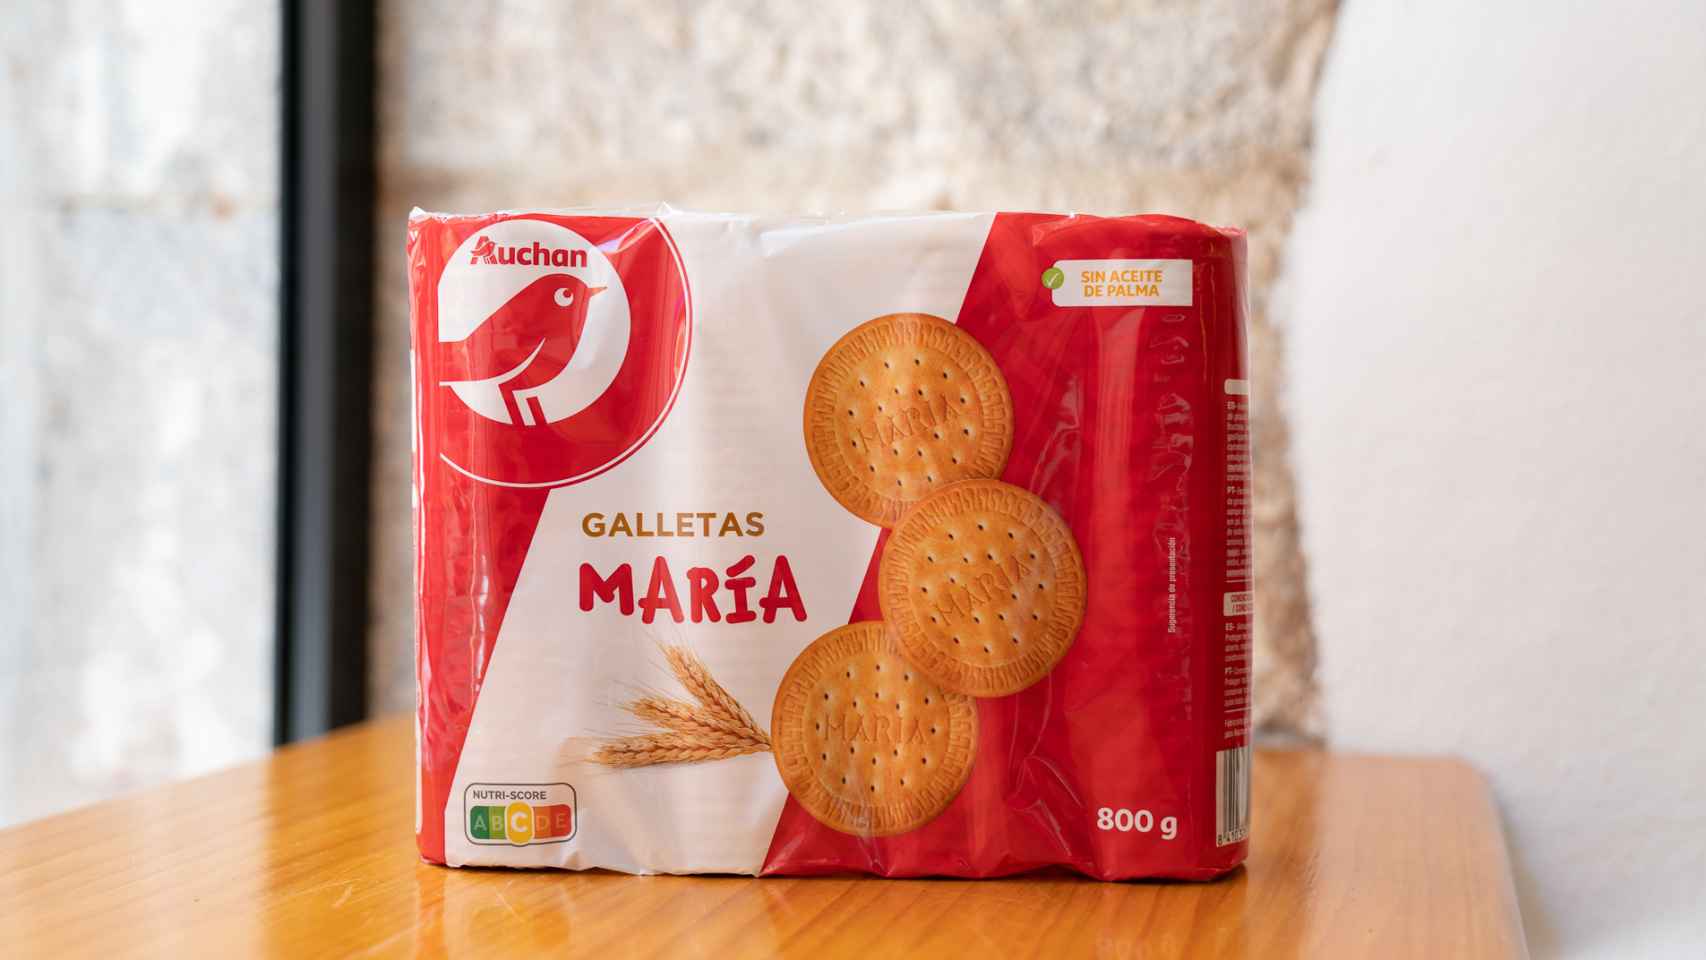 El paquete de galleta María de Auchan, la marca blanca de Alcampo.